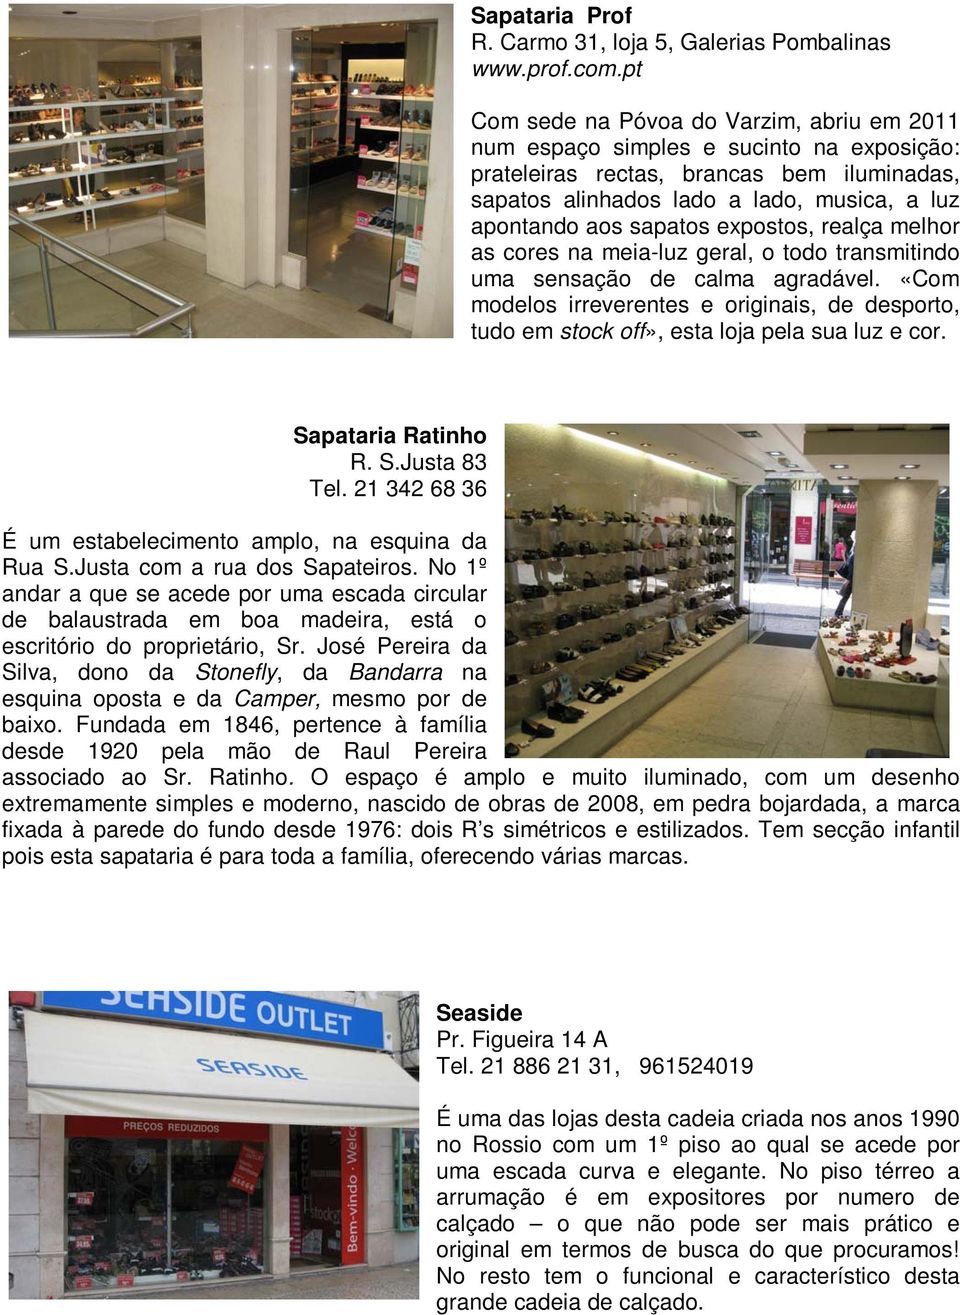 AS SAPATARIAS DA BAIXA E DO CHIADO - PDF Free Download